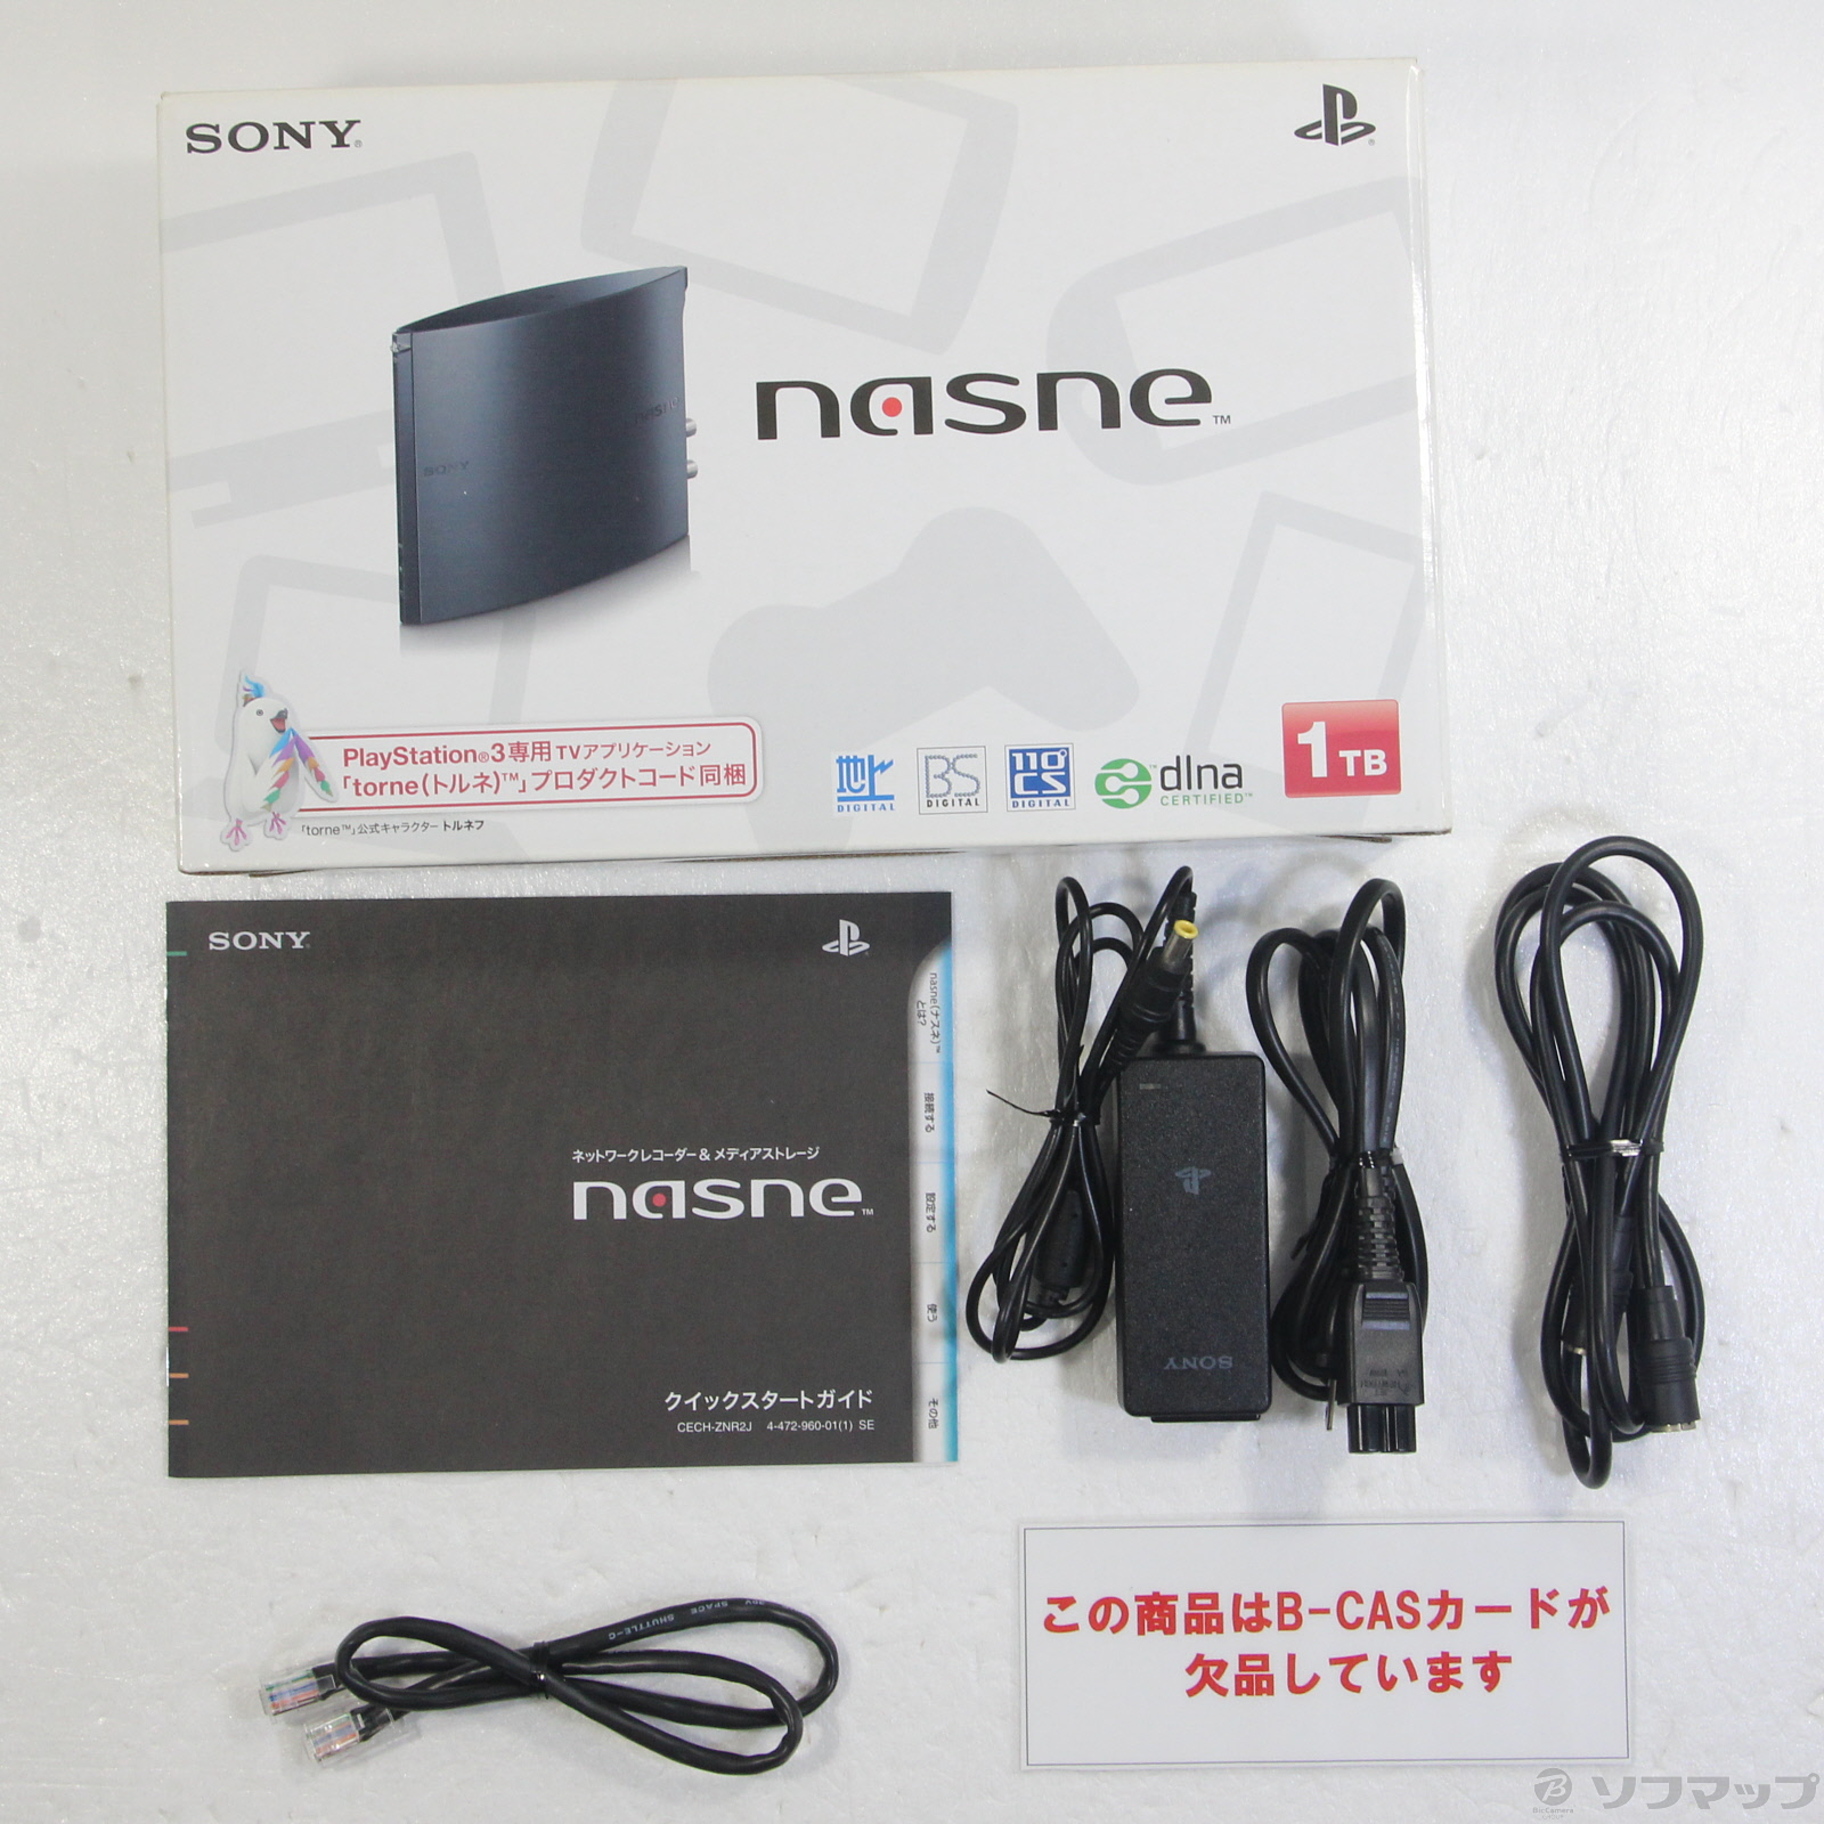 適切な価格 商品名 ・Sony nasne 1TBモデル 無線化セット その他 - www ...